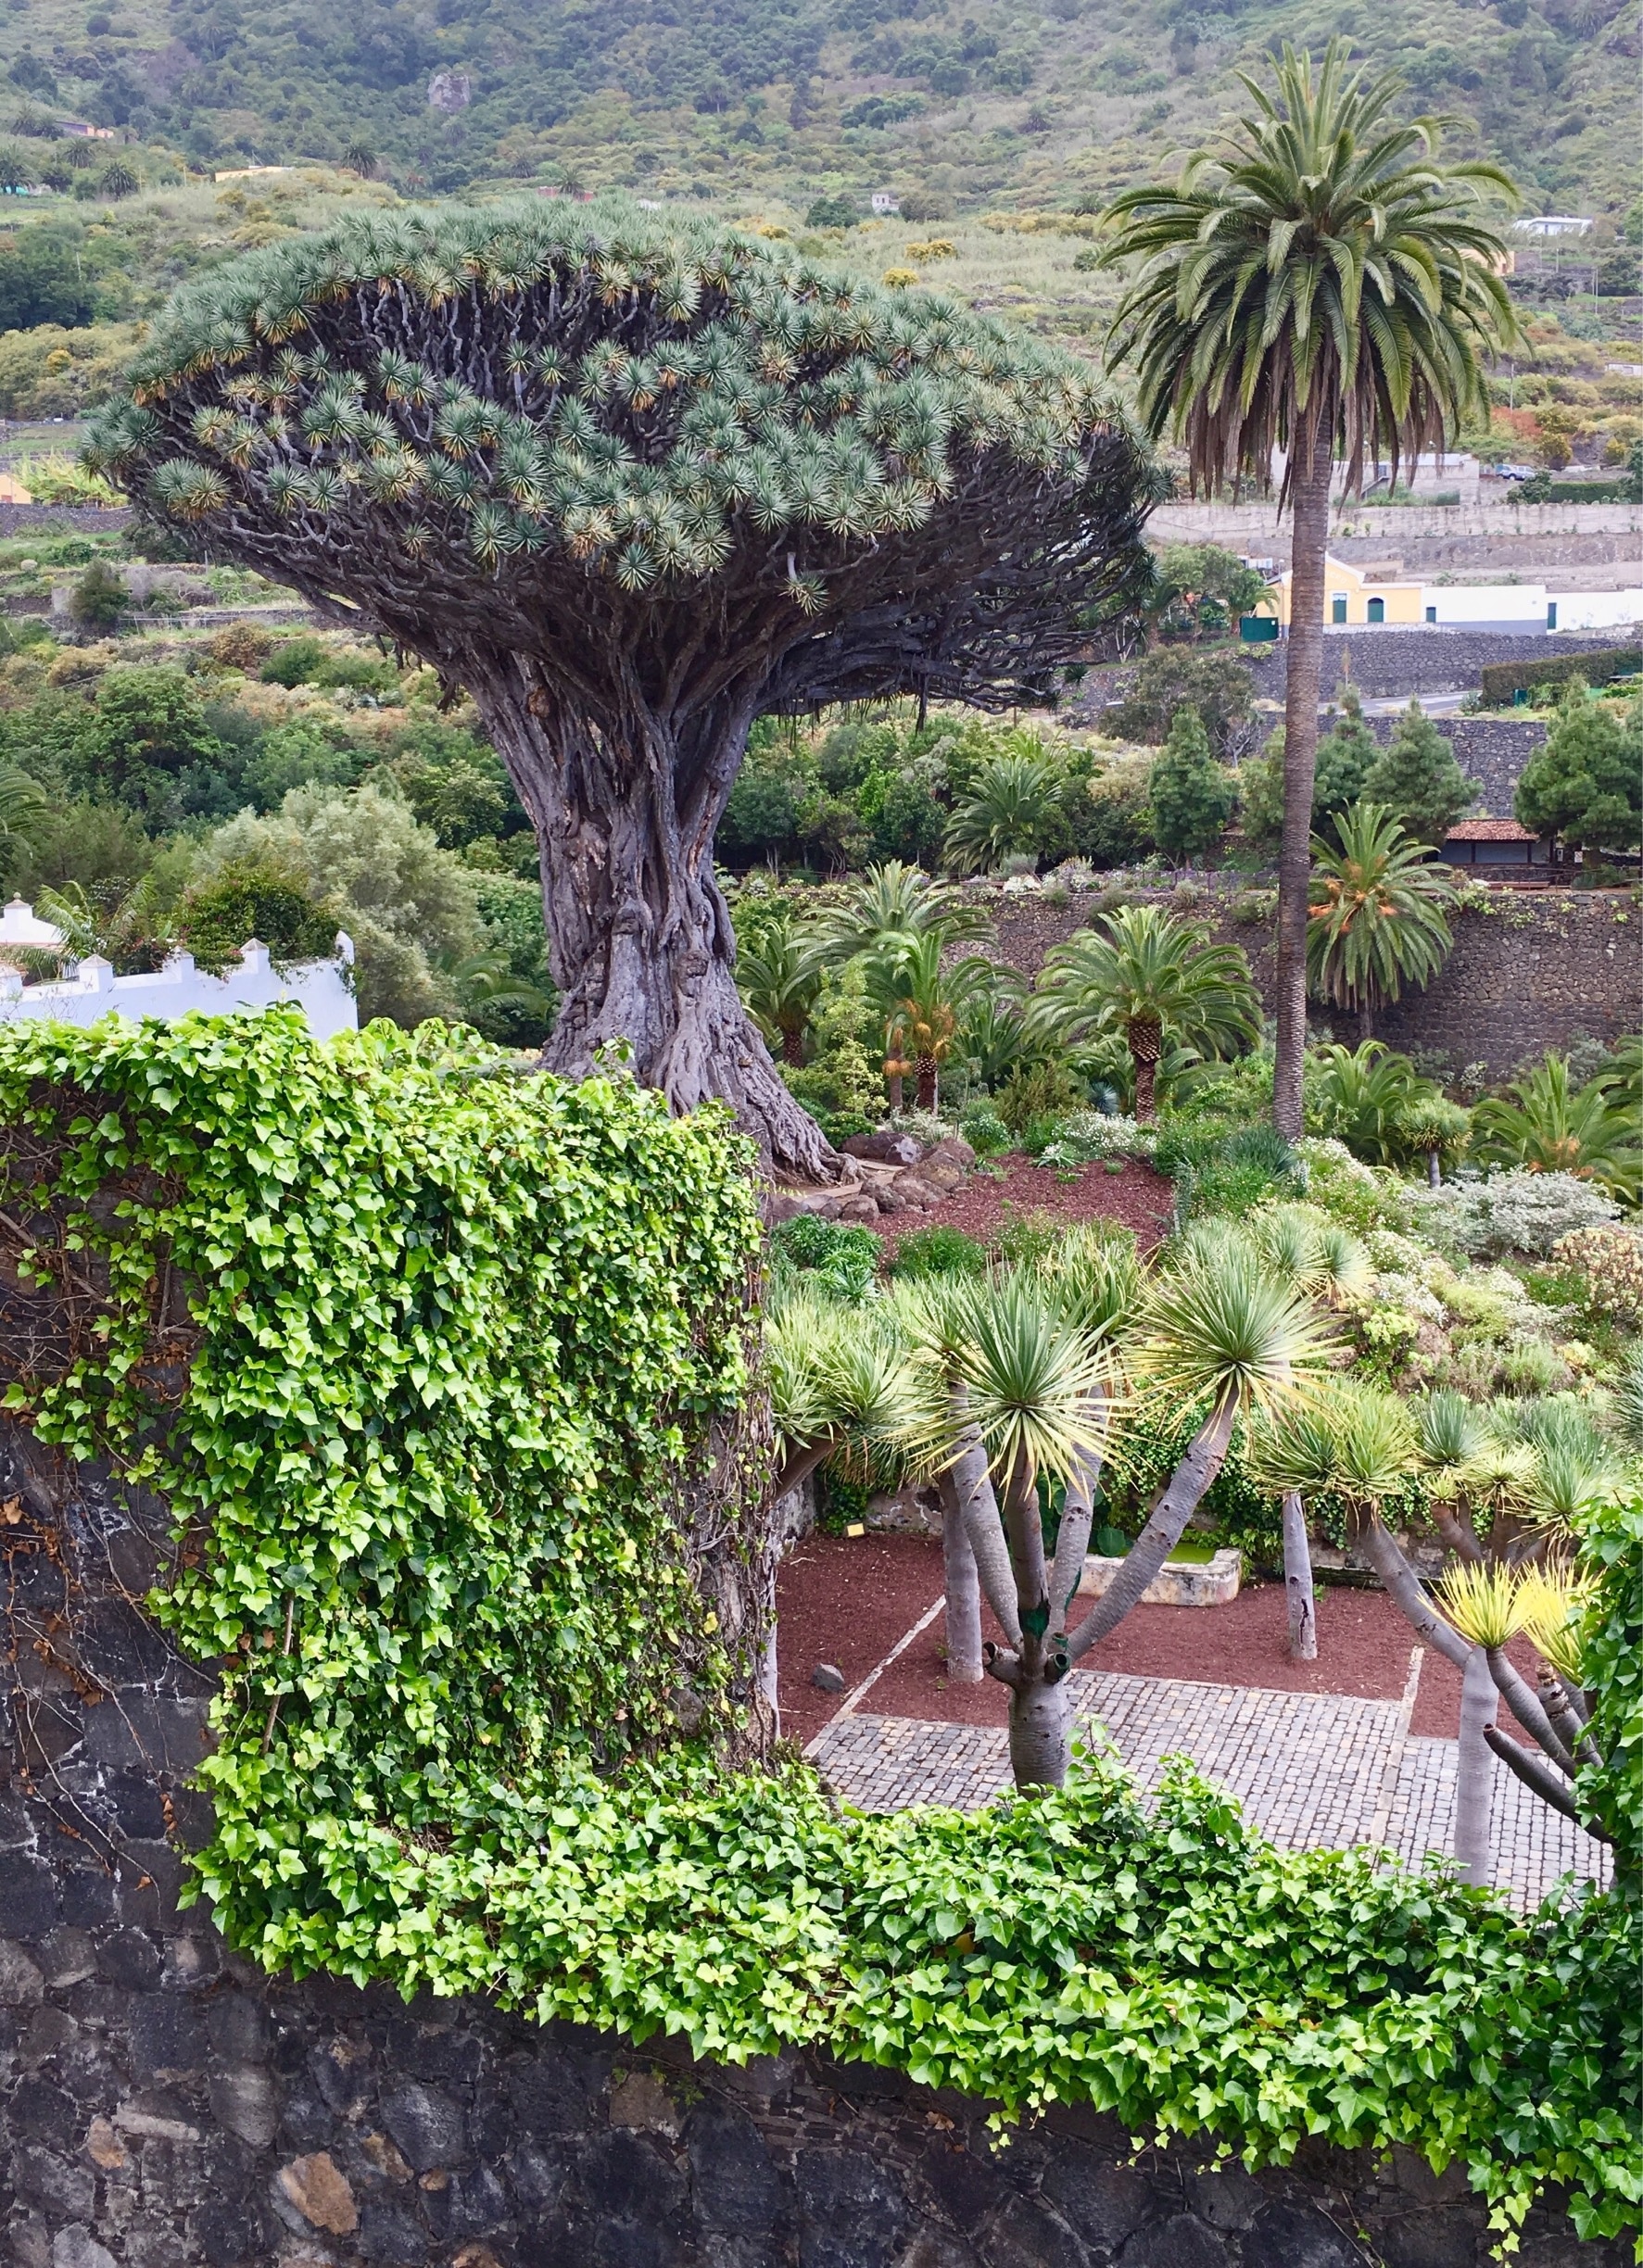 400 years old dragon tree, Tenerife
#green